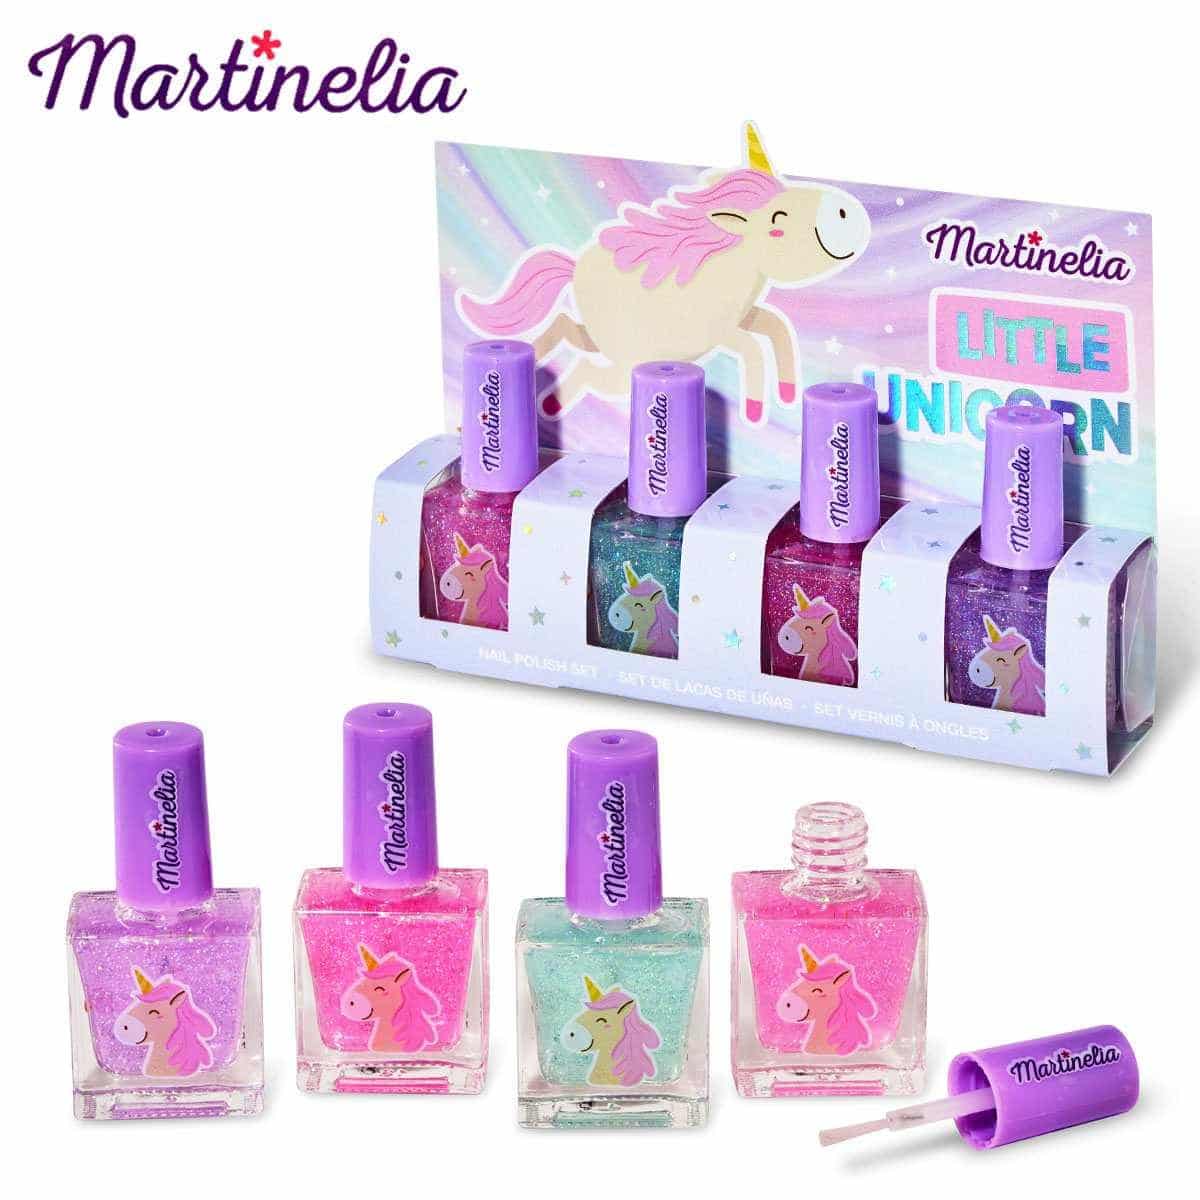 Martinelia little unicorn nail polish set – Carlys